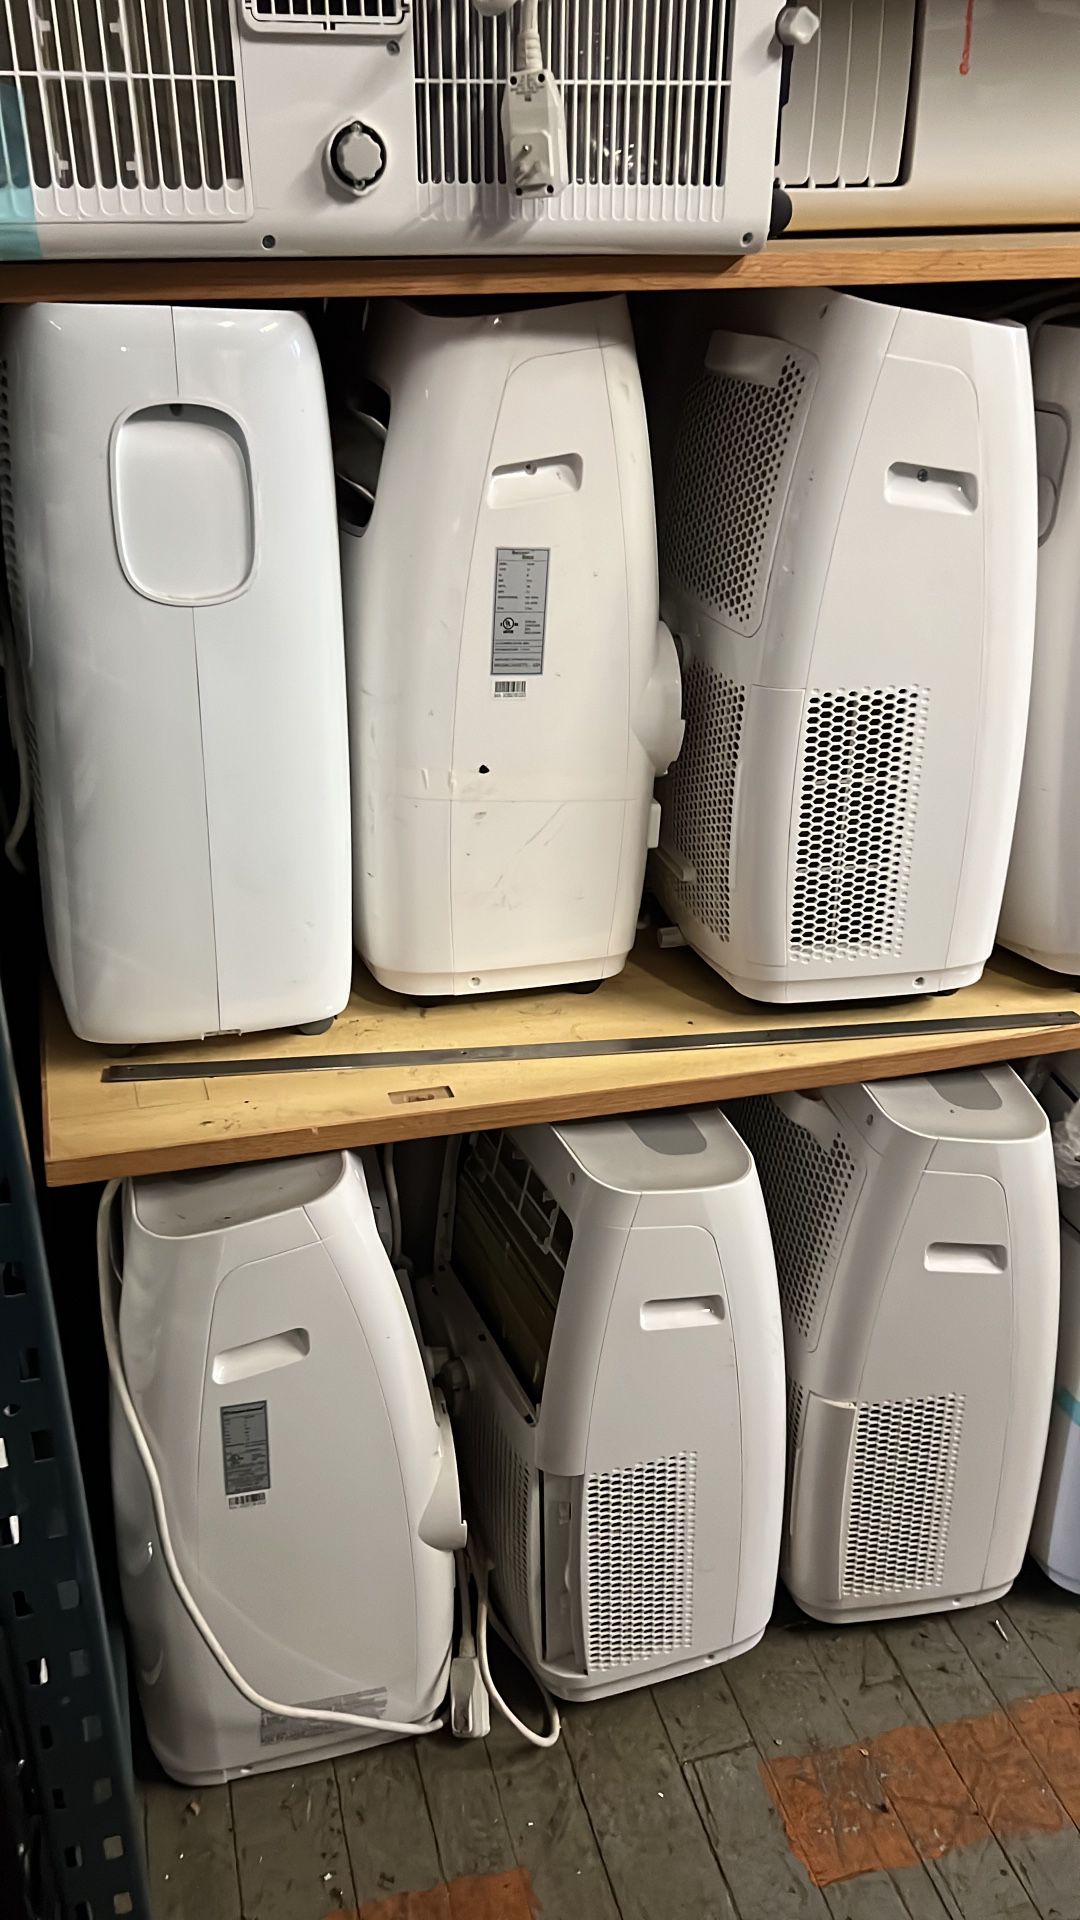 Brand New Portable Air Conditioners . No Hose No Attachments PLEASE READ AD